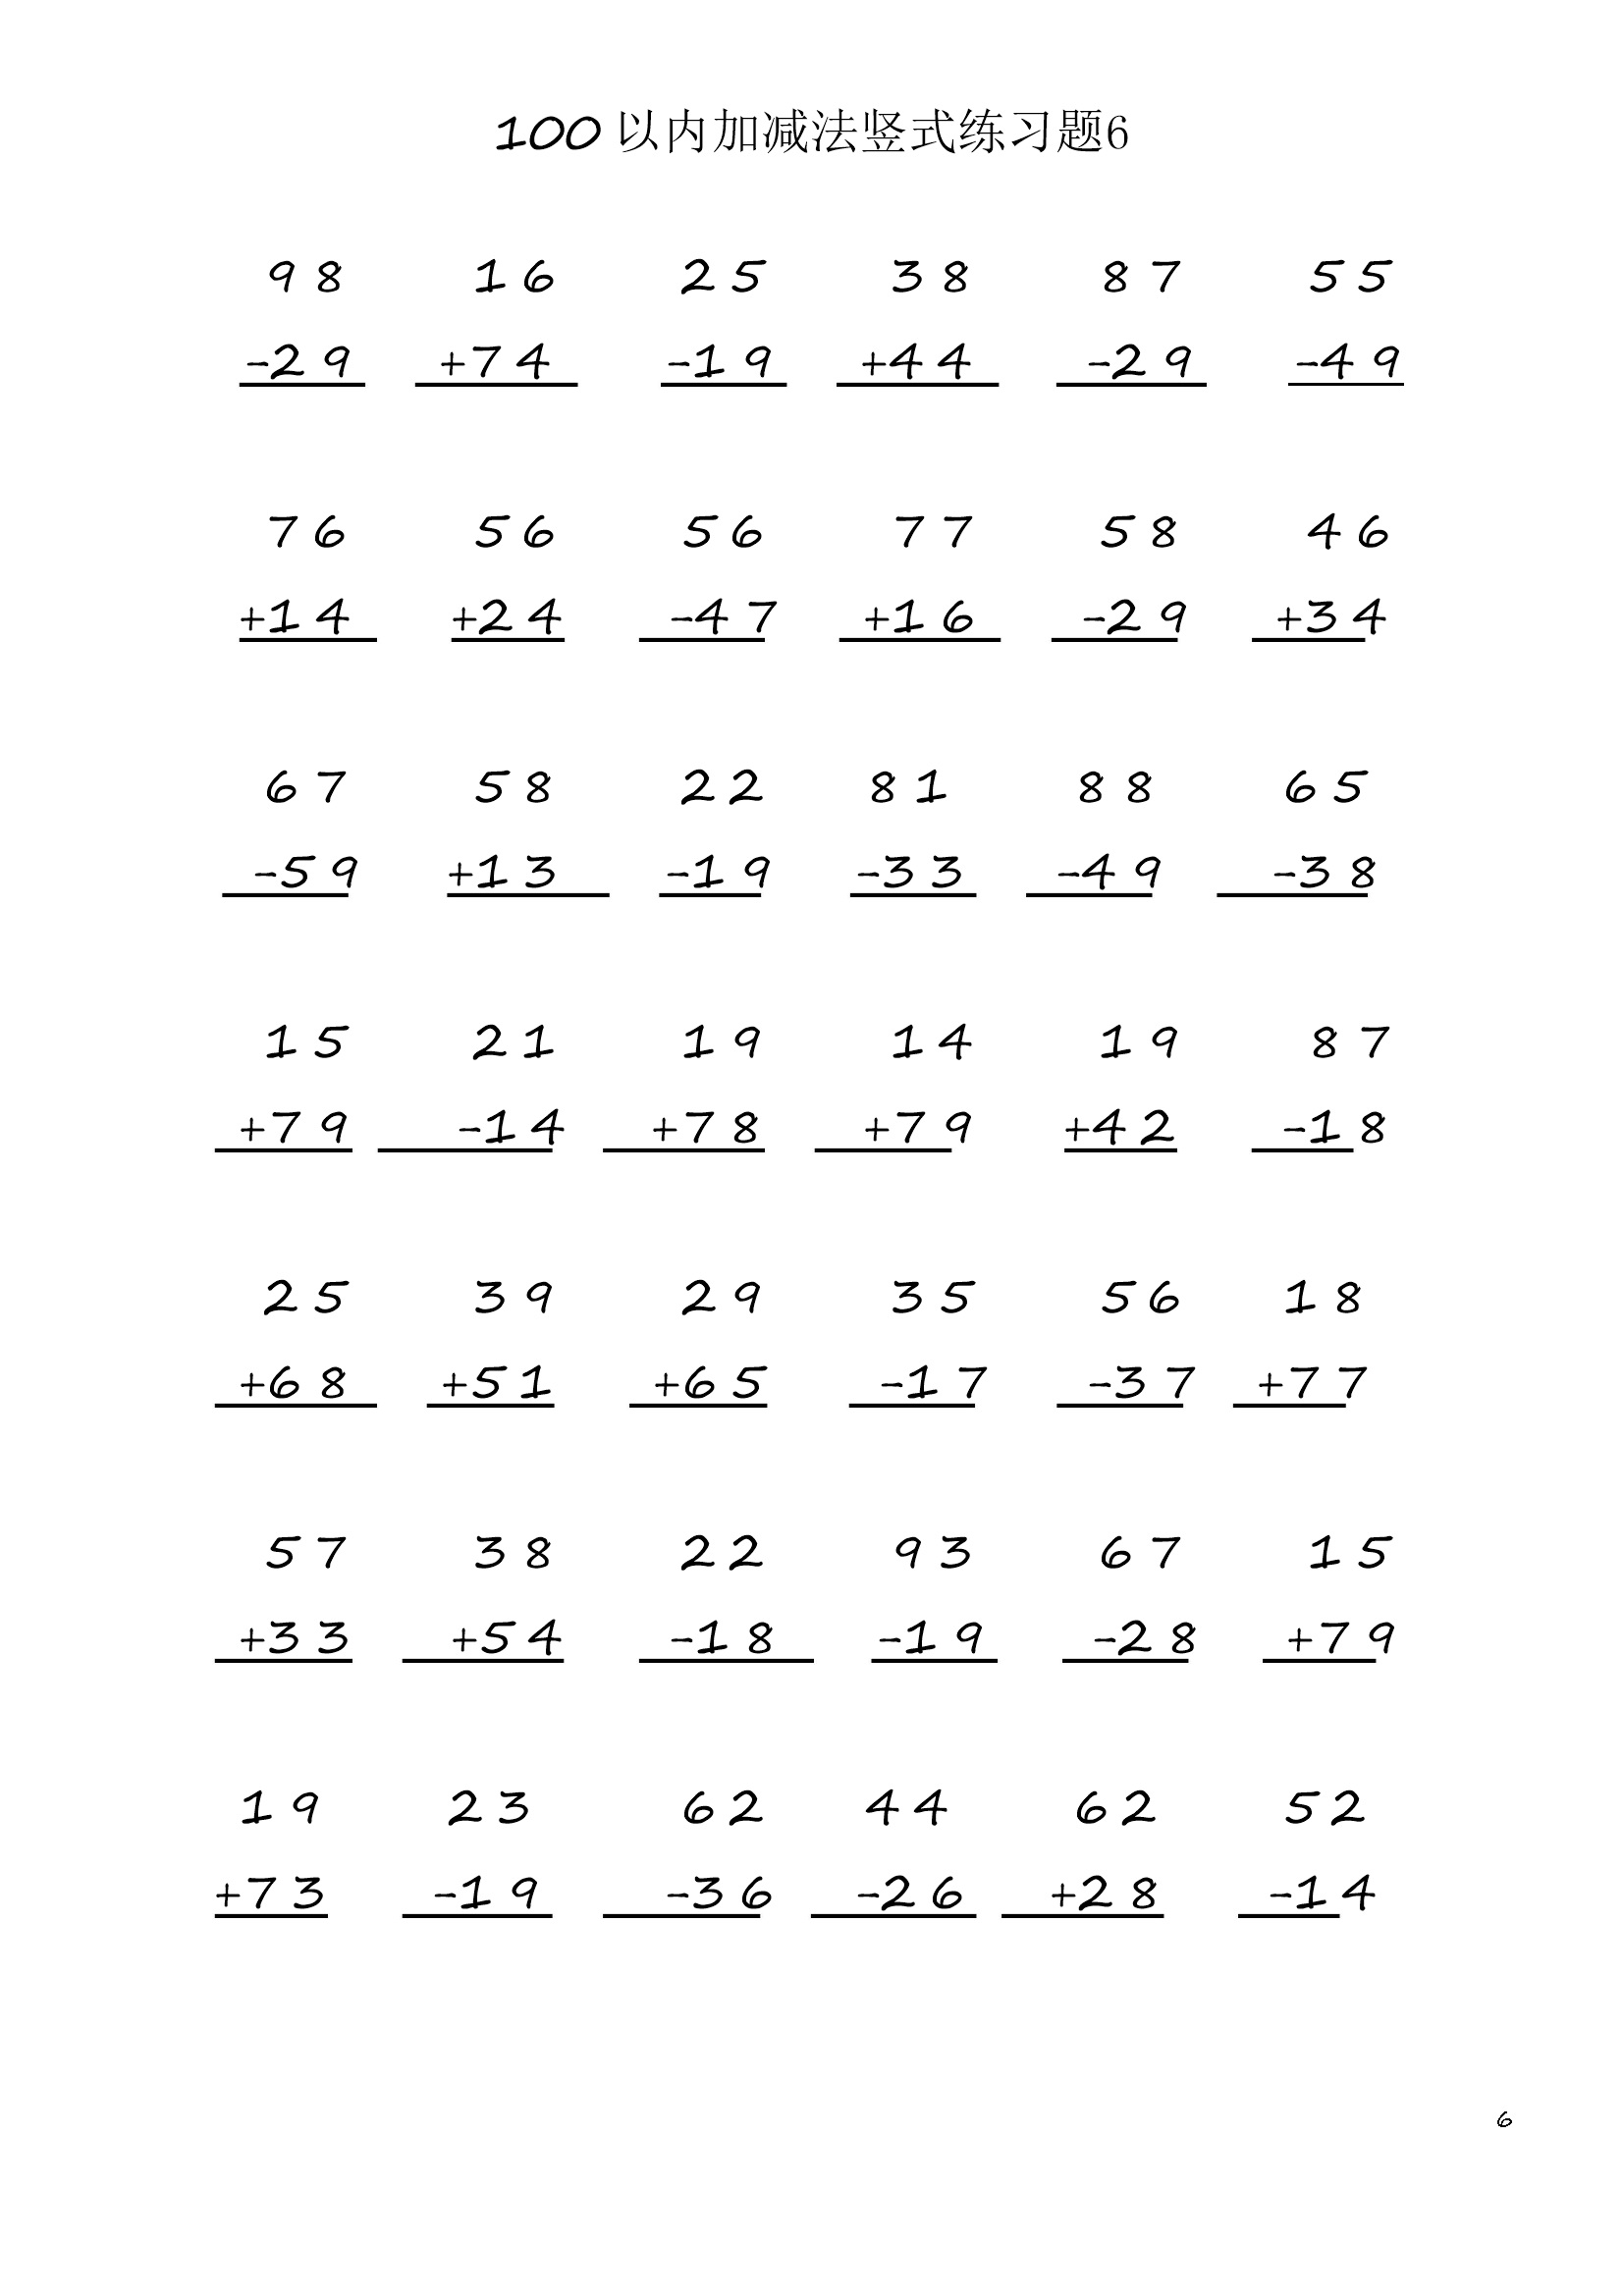 小学数学二年级上册100 以内加减法竖式练习题6  (1页42题)